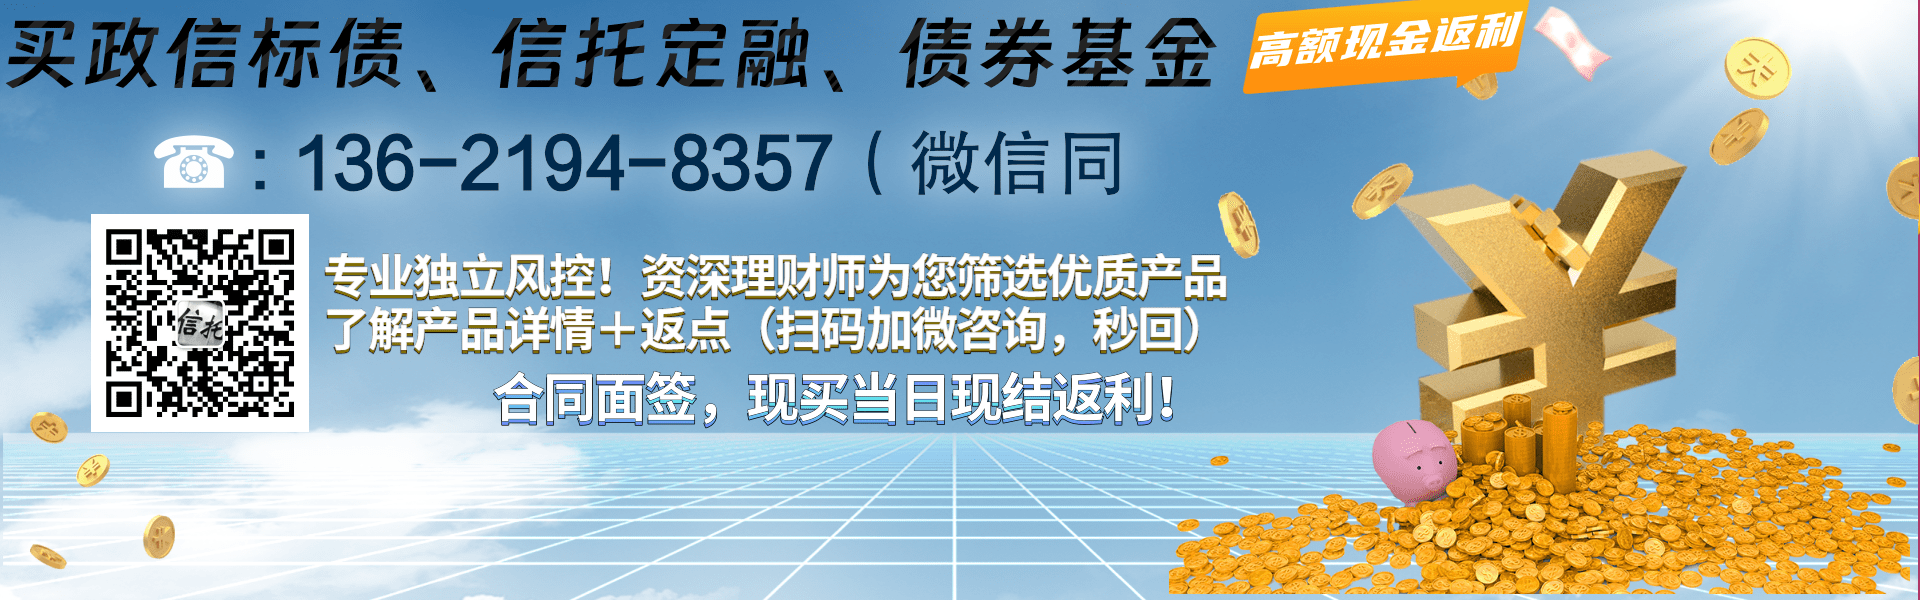 重庆市万盛经开区城市开发投资2024年债权资产（二）